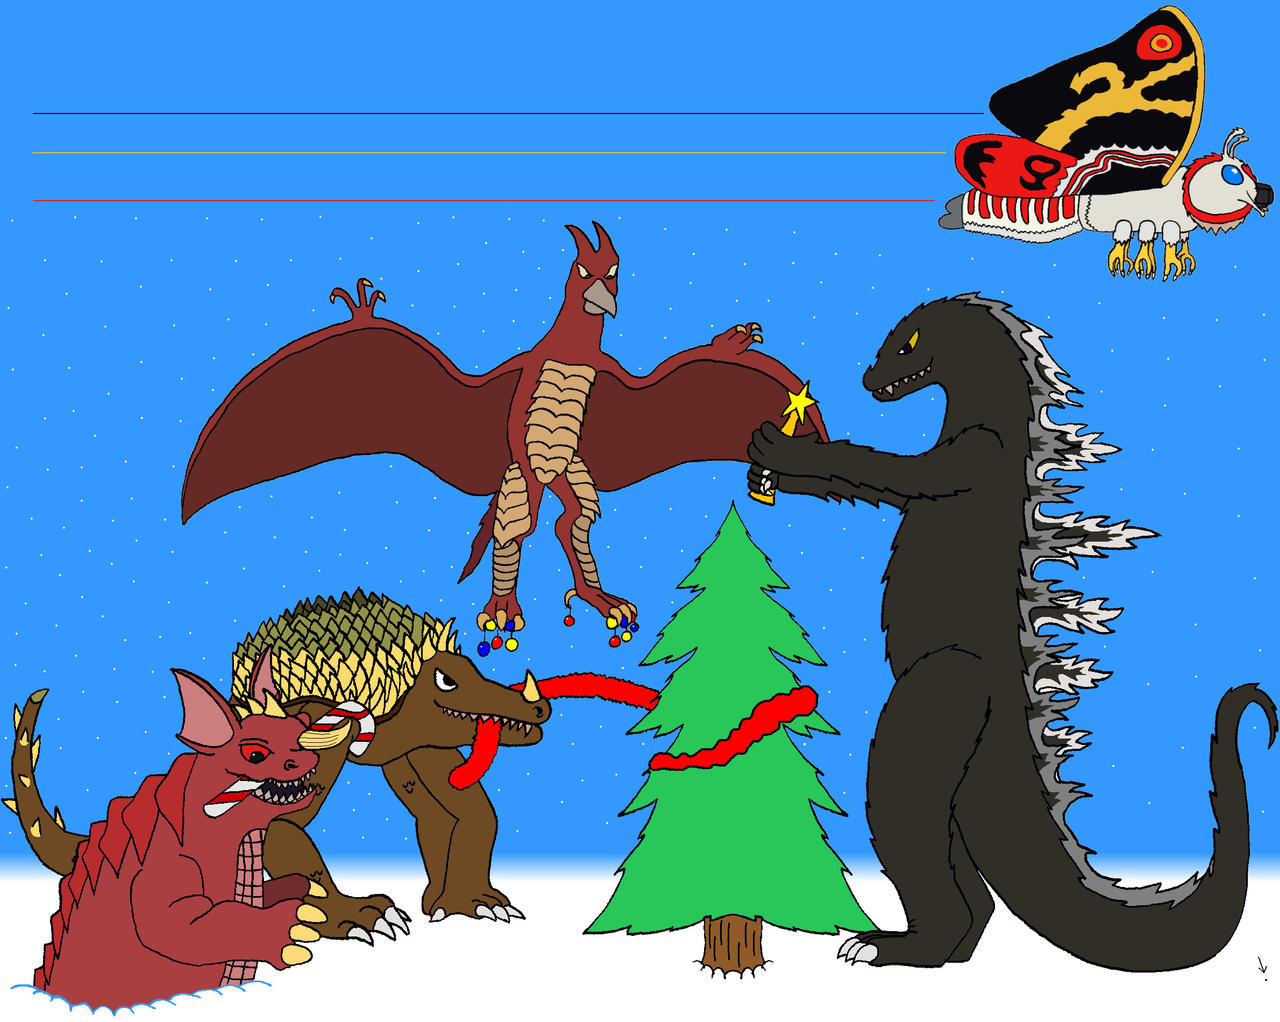 Christmas on Monster Island